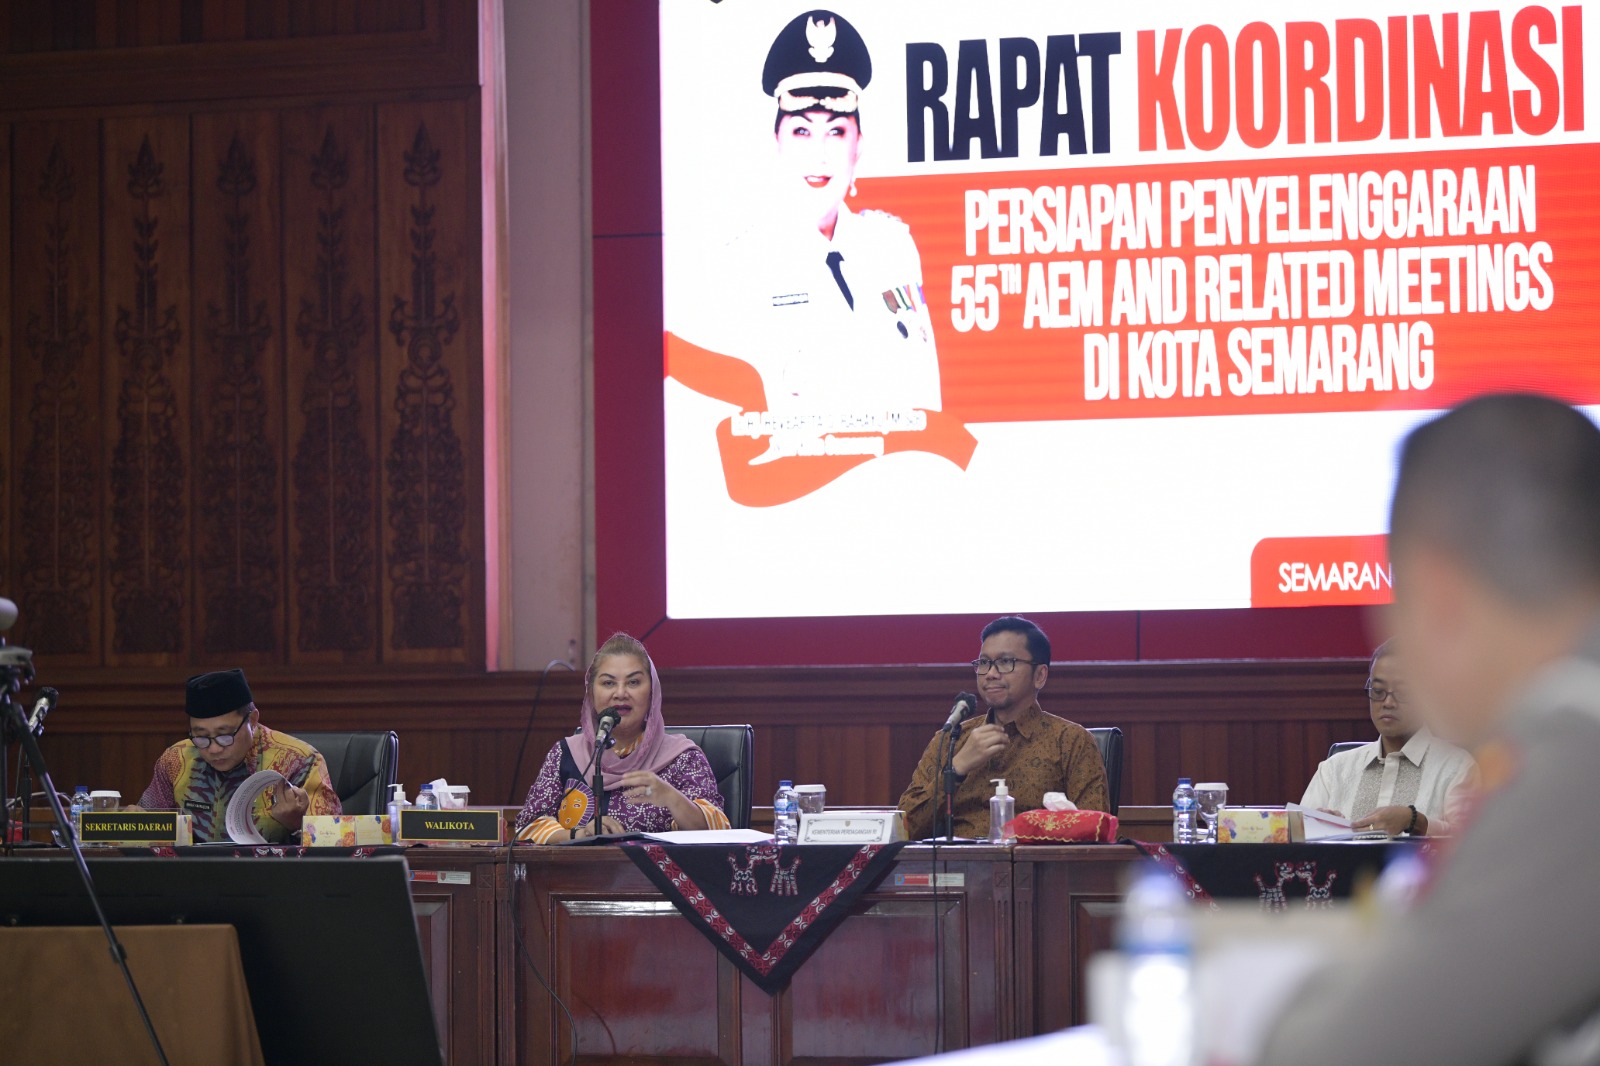 Wali Kota Semarang Ajak Masyarakat Sukseskan Pertemuan Menteri Ekonomi ASEAN